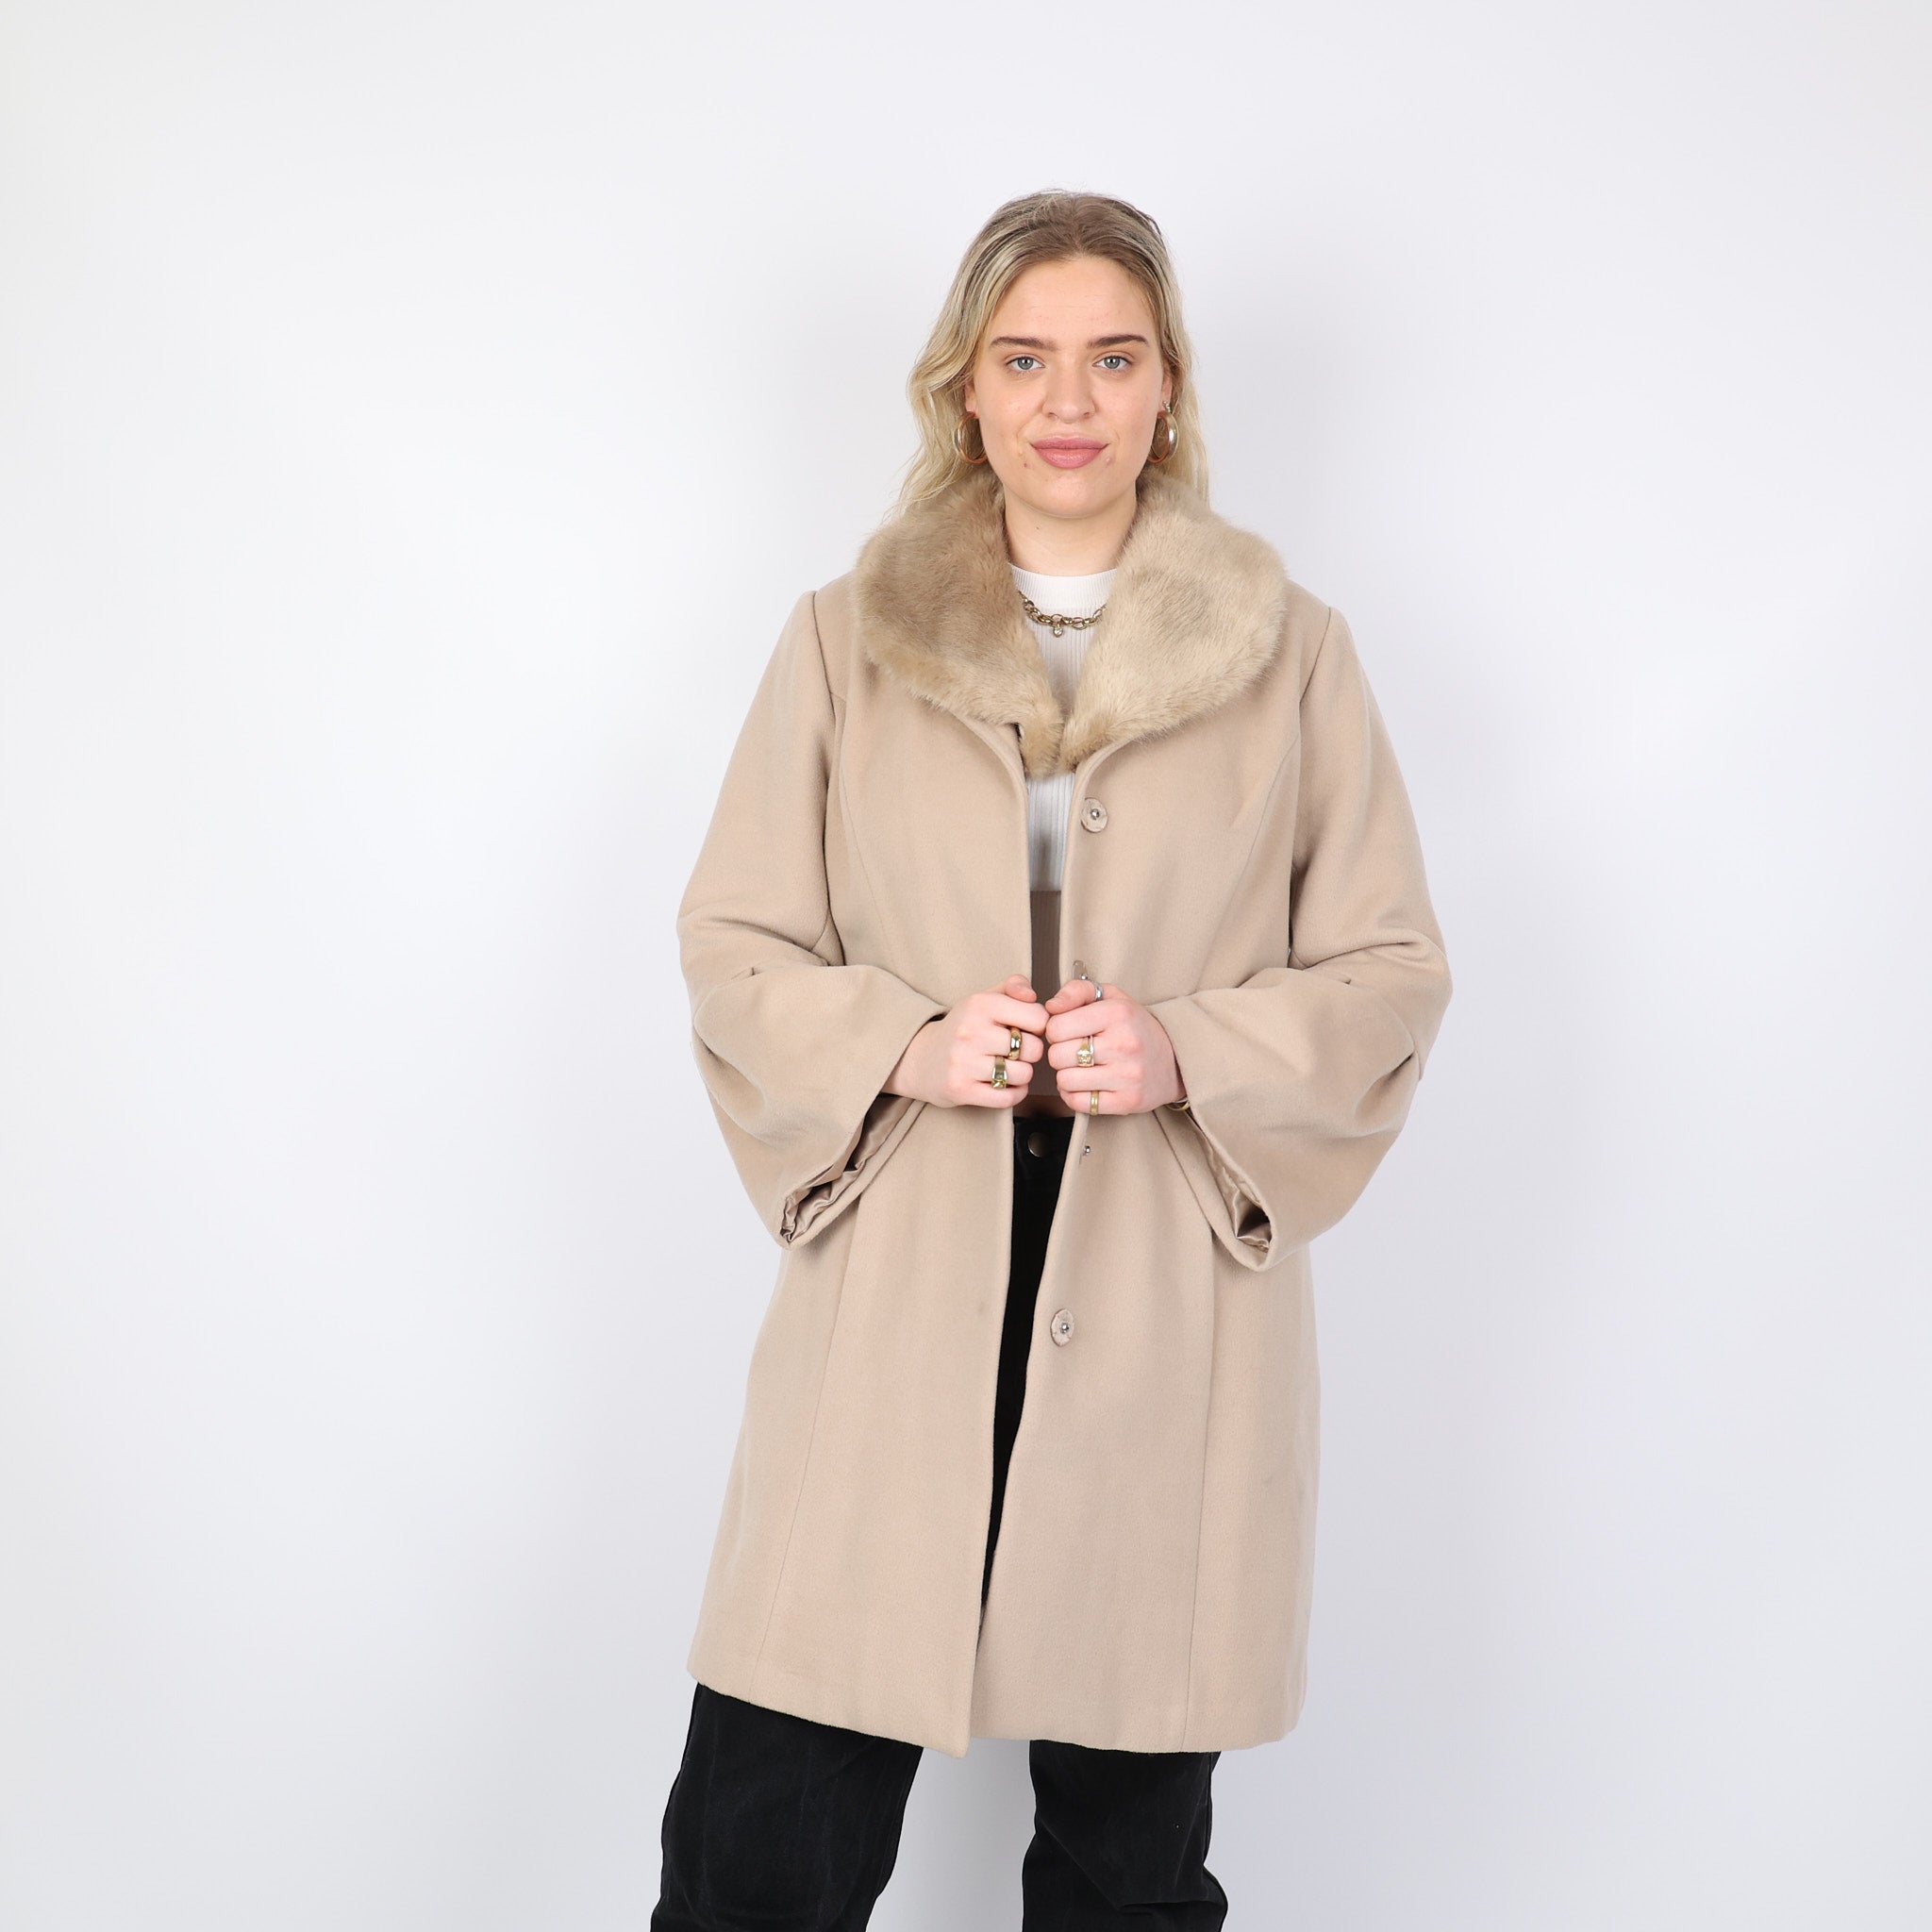 Coat, UK Size 18